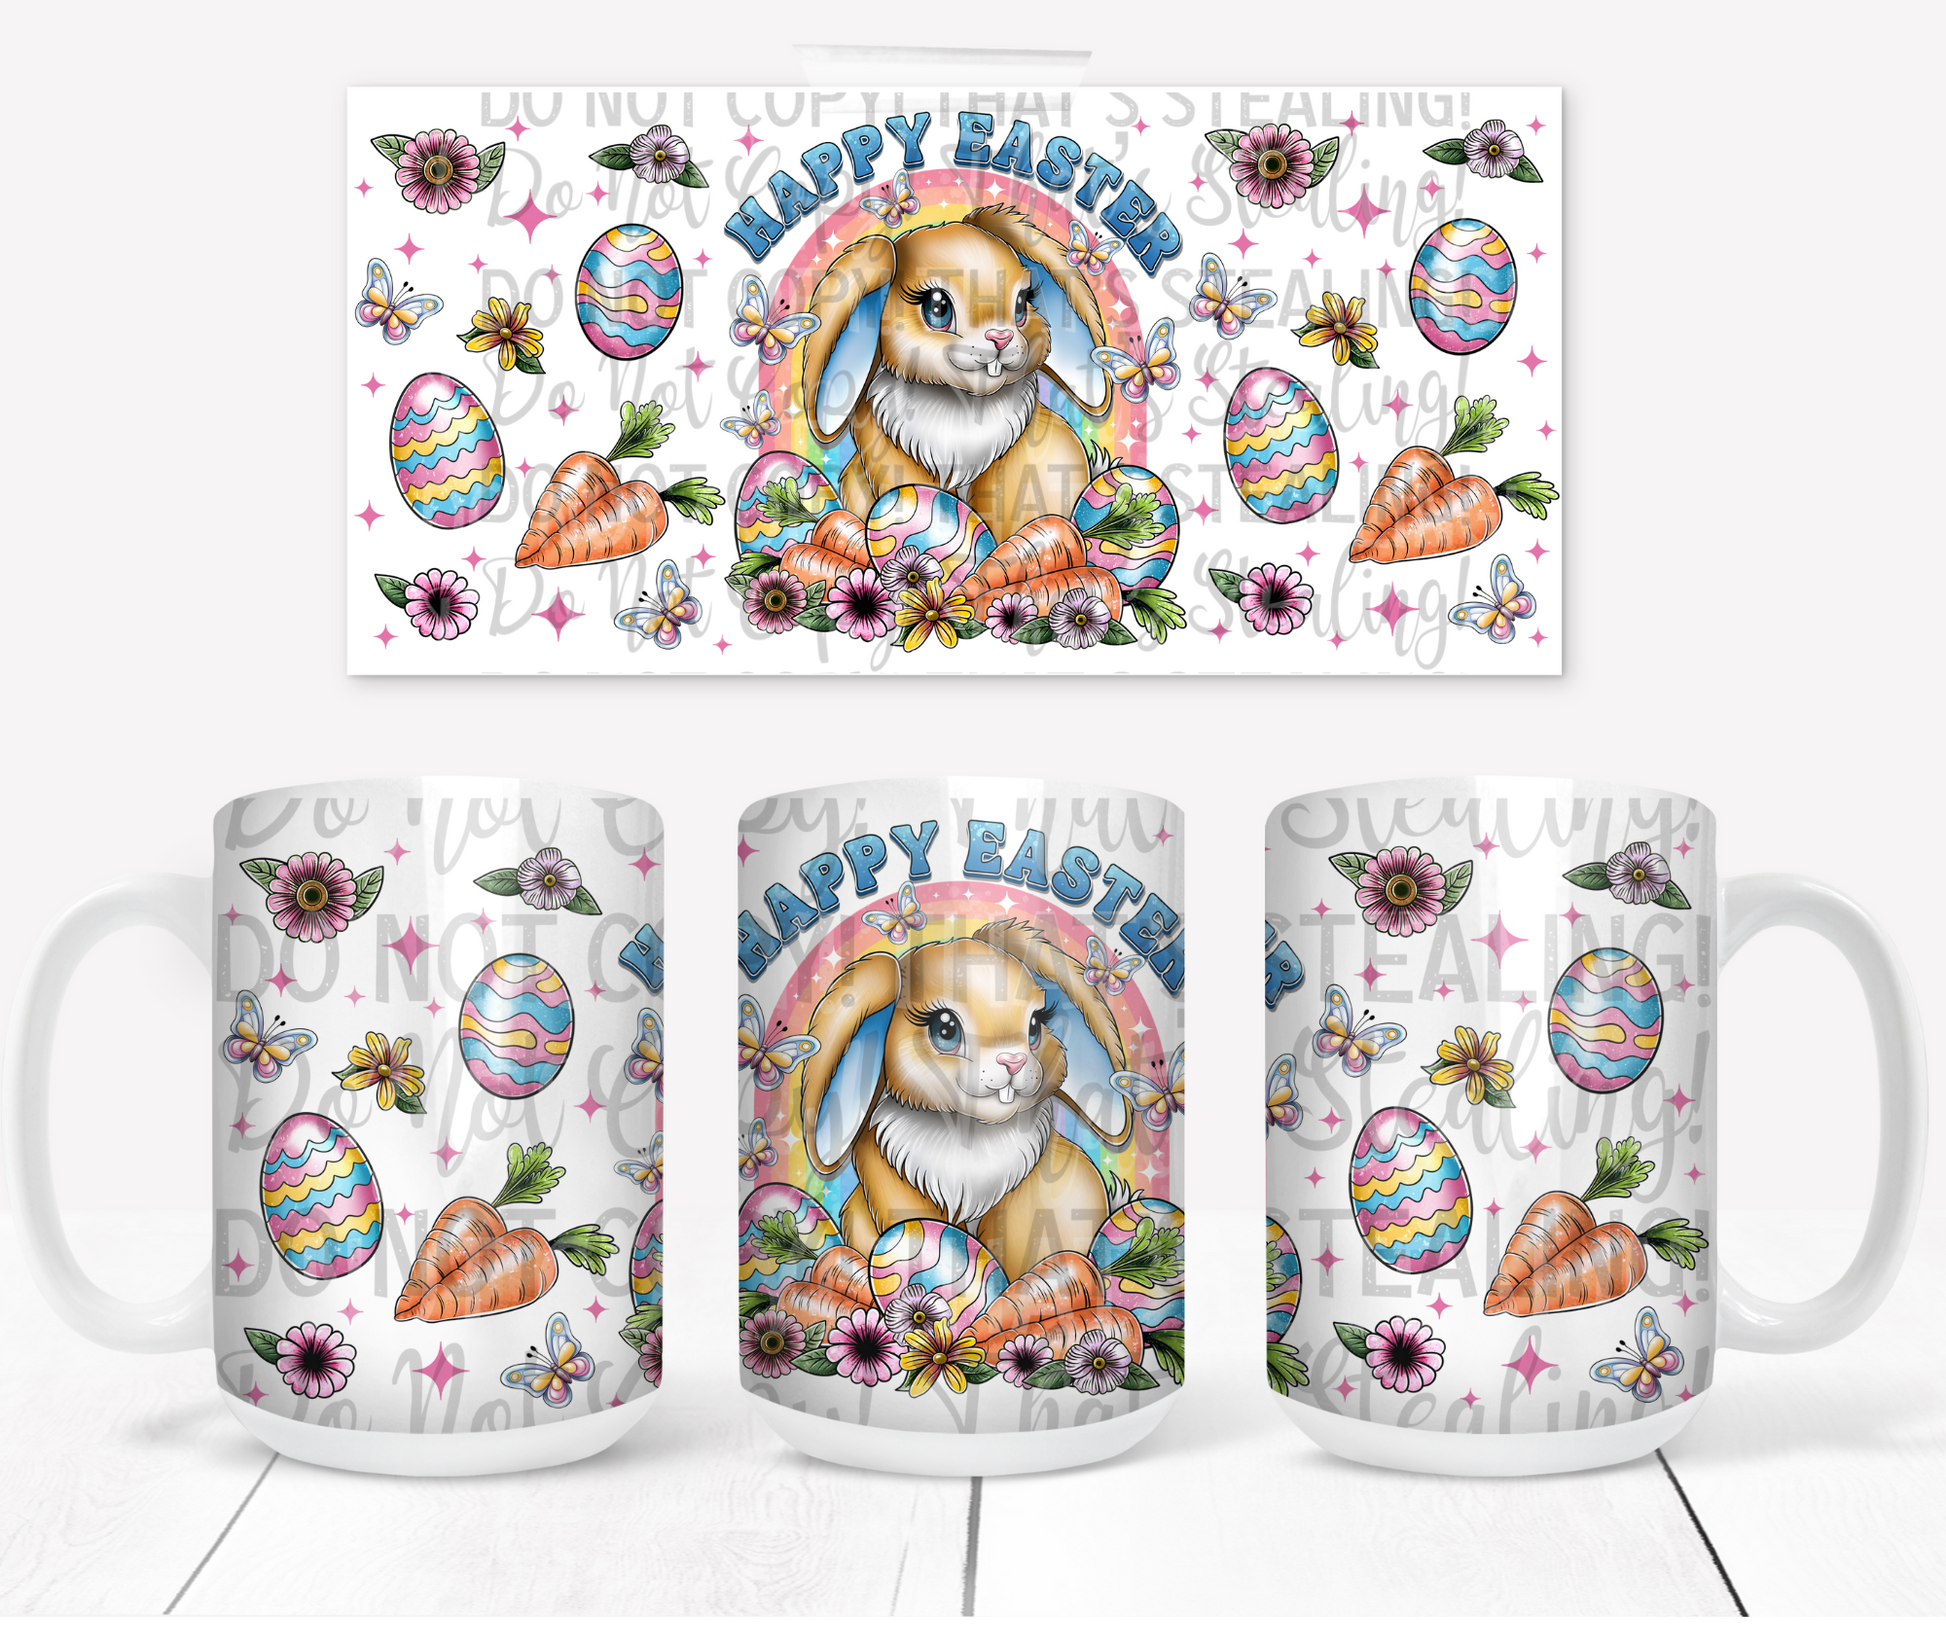 Happy Easter bunny coffee mug. -Mayan Sub Shop